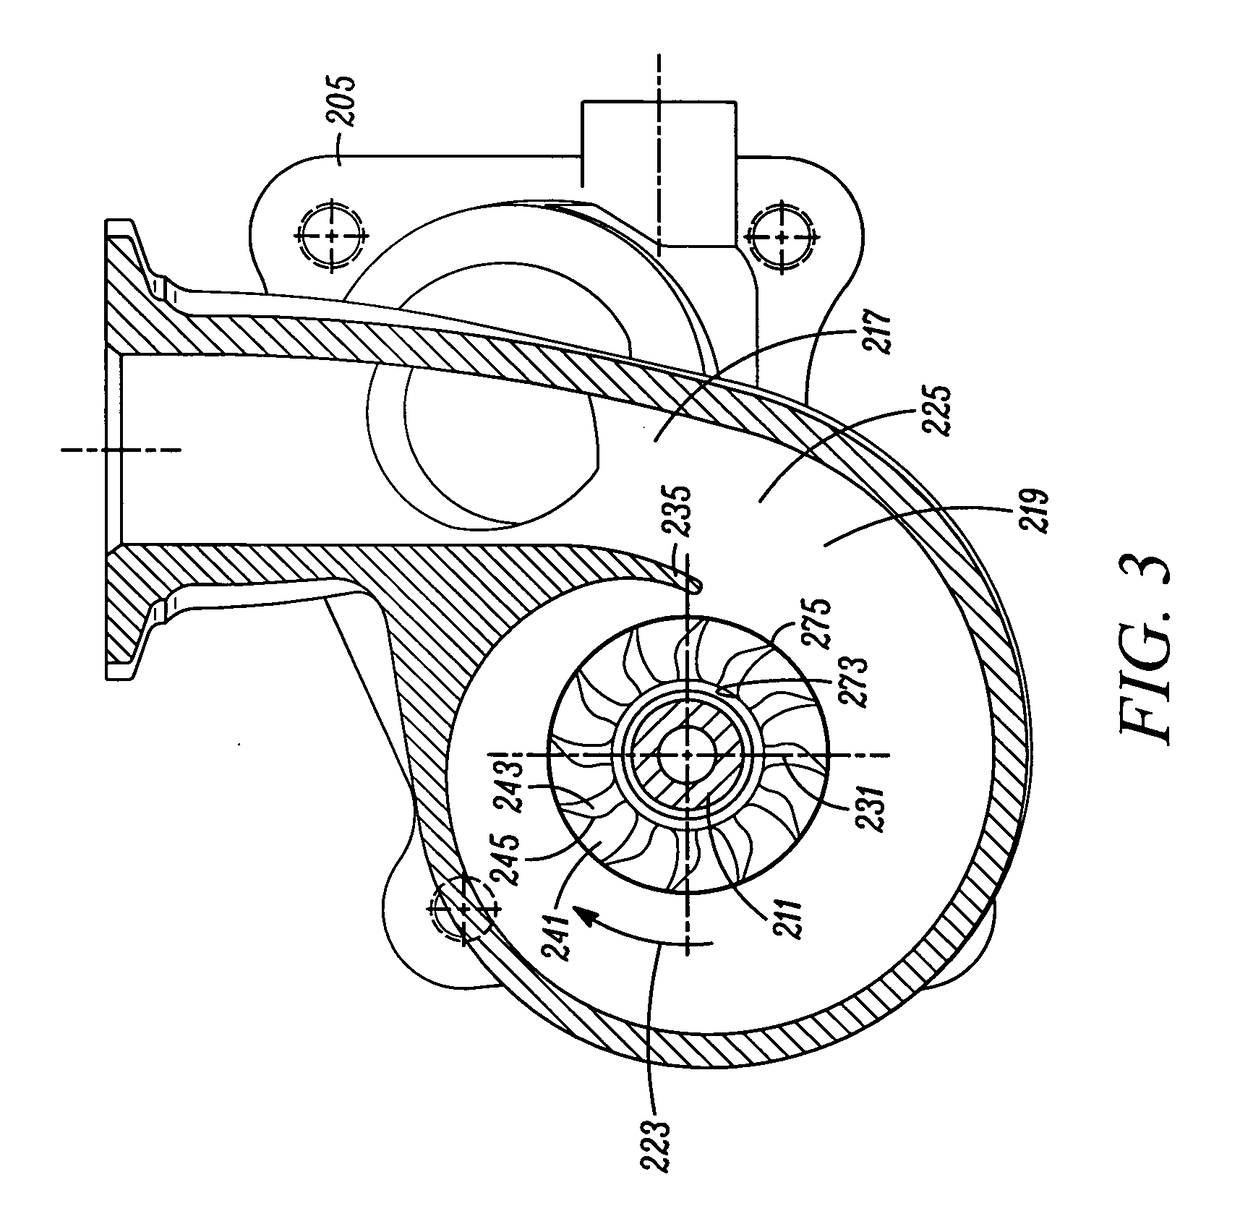 Axial turbine wheel